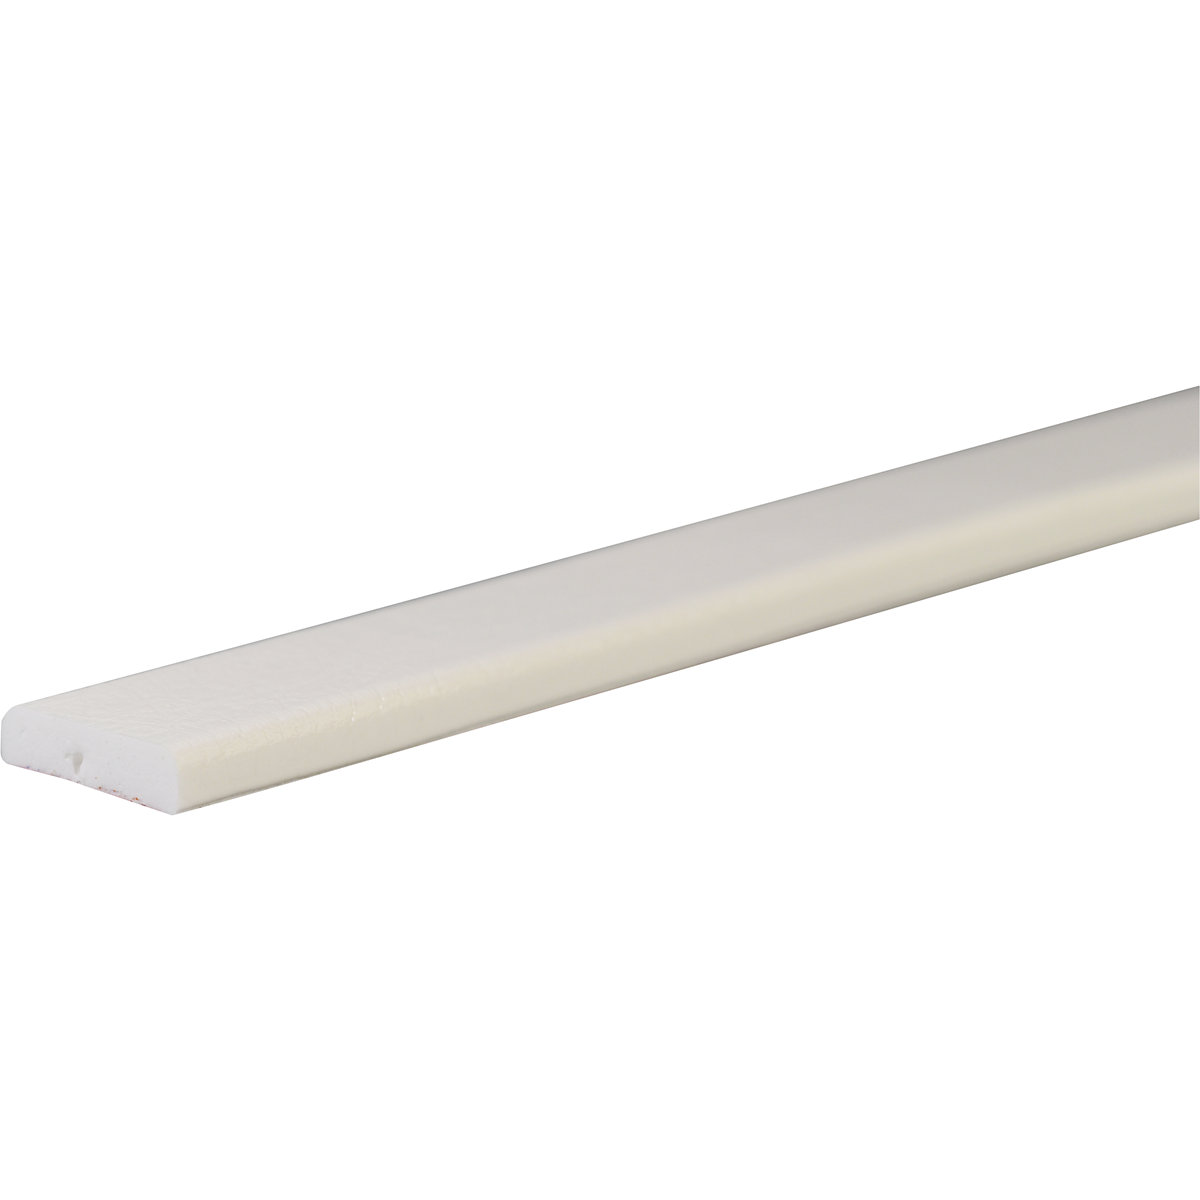 Protection des surfaces Knuffi® – SHG, type F, réutilisable, pièce de 1 mètre, blanc